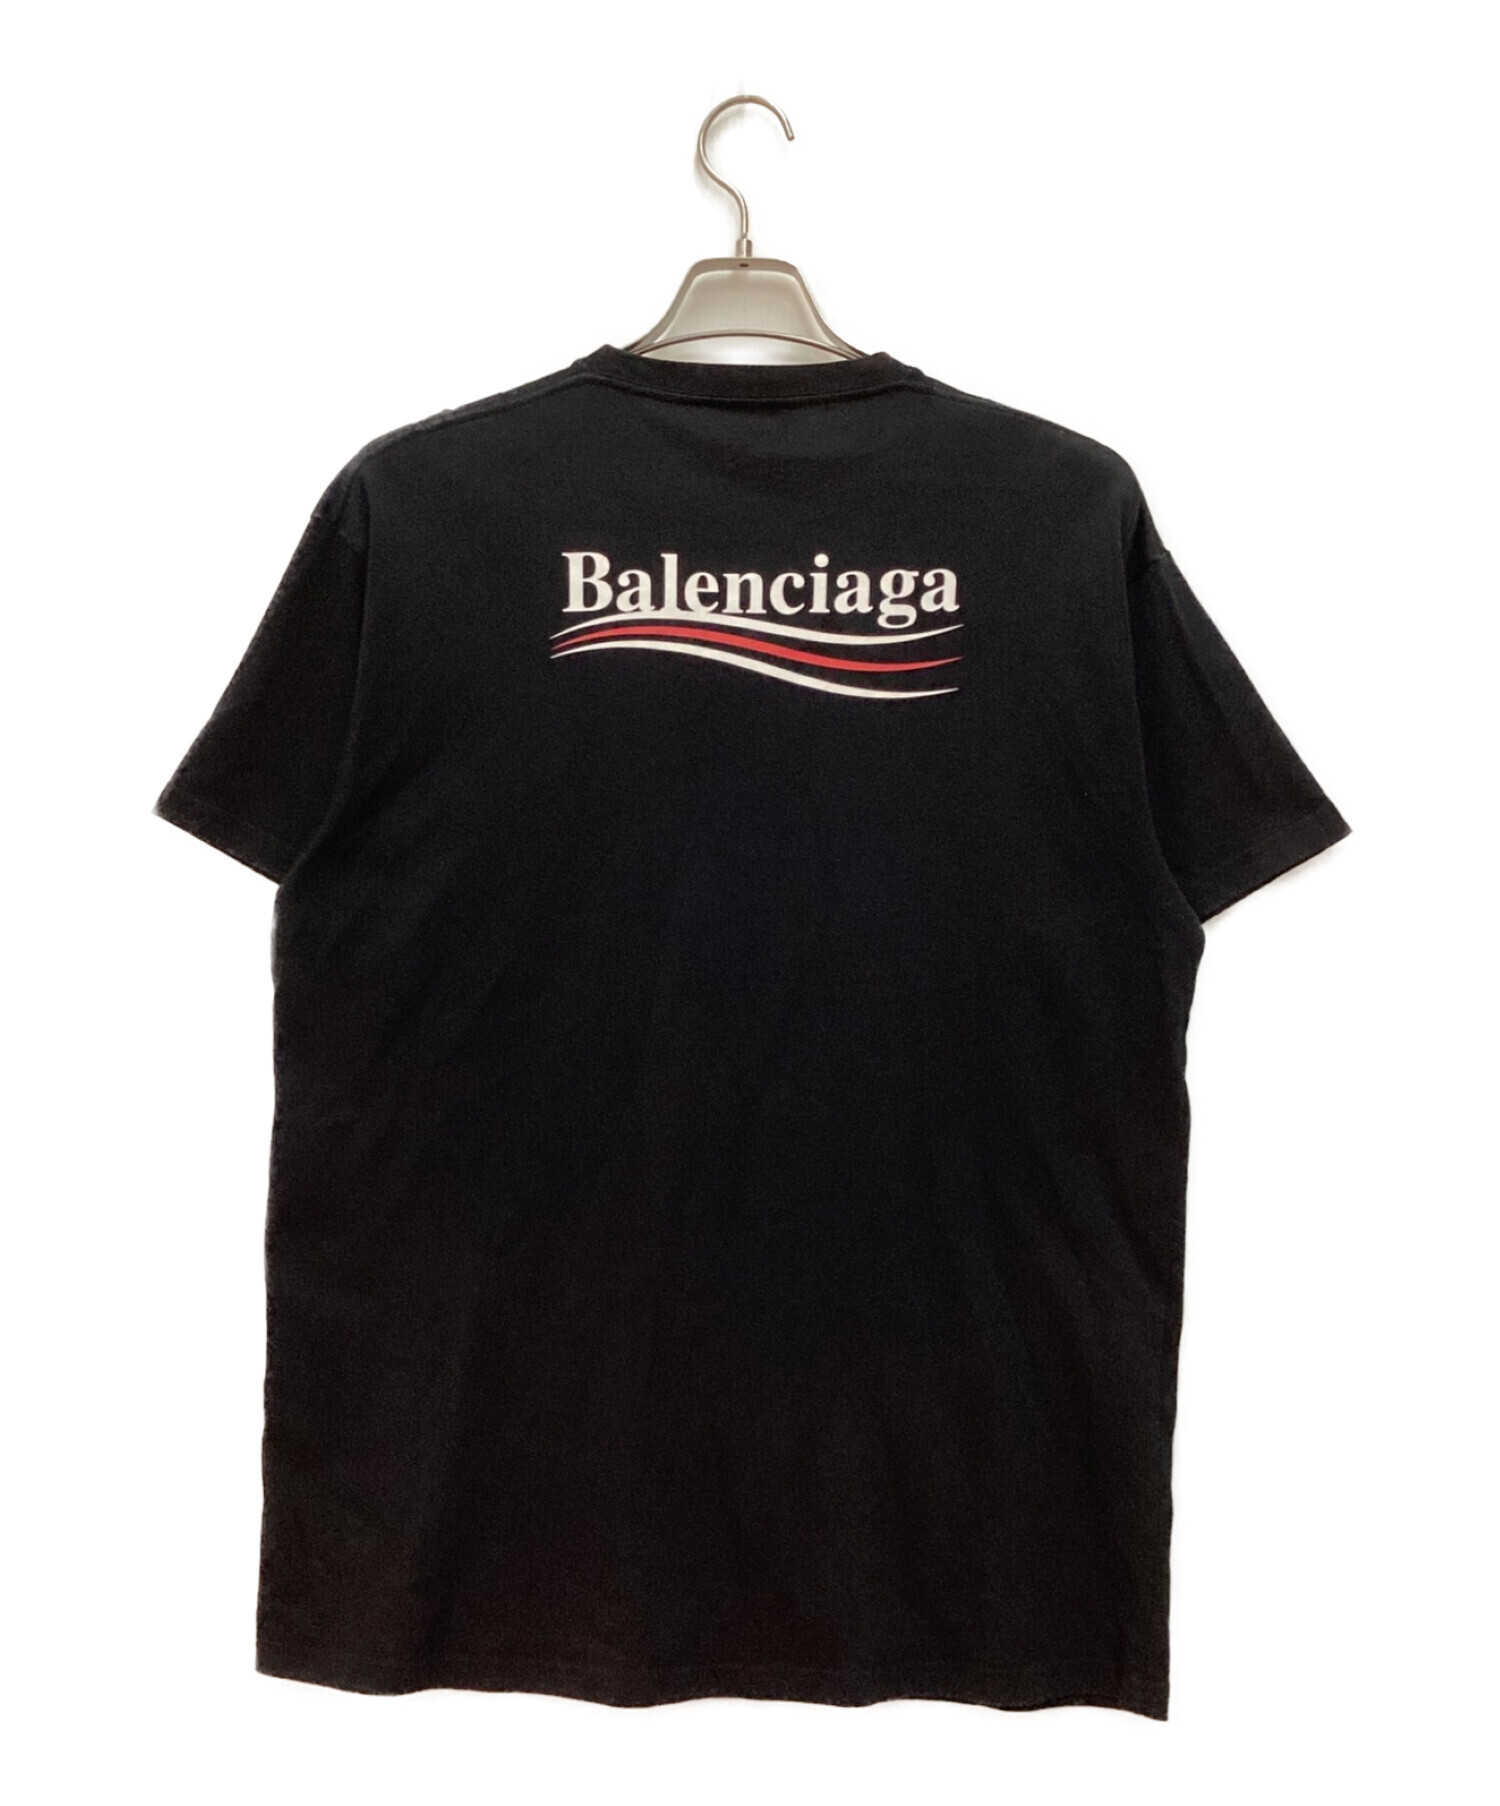 ブランド公式通販 BALENCIAGA キャンペーンロゴ Tシャツ ブラック